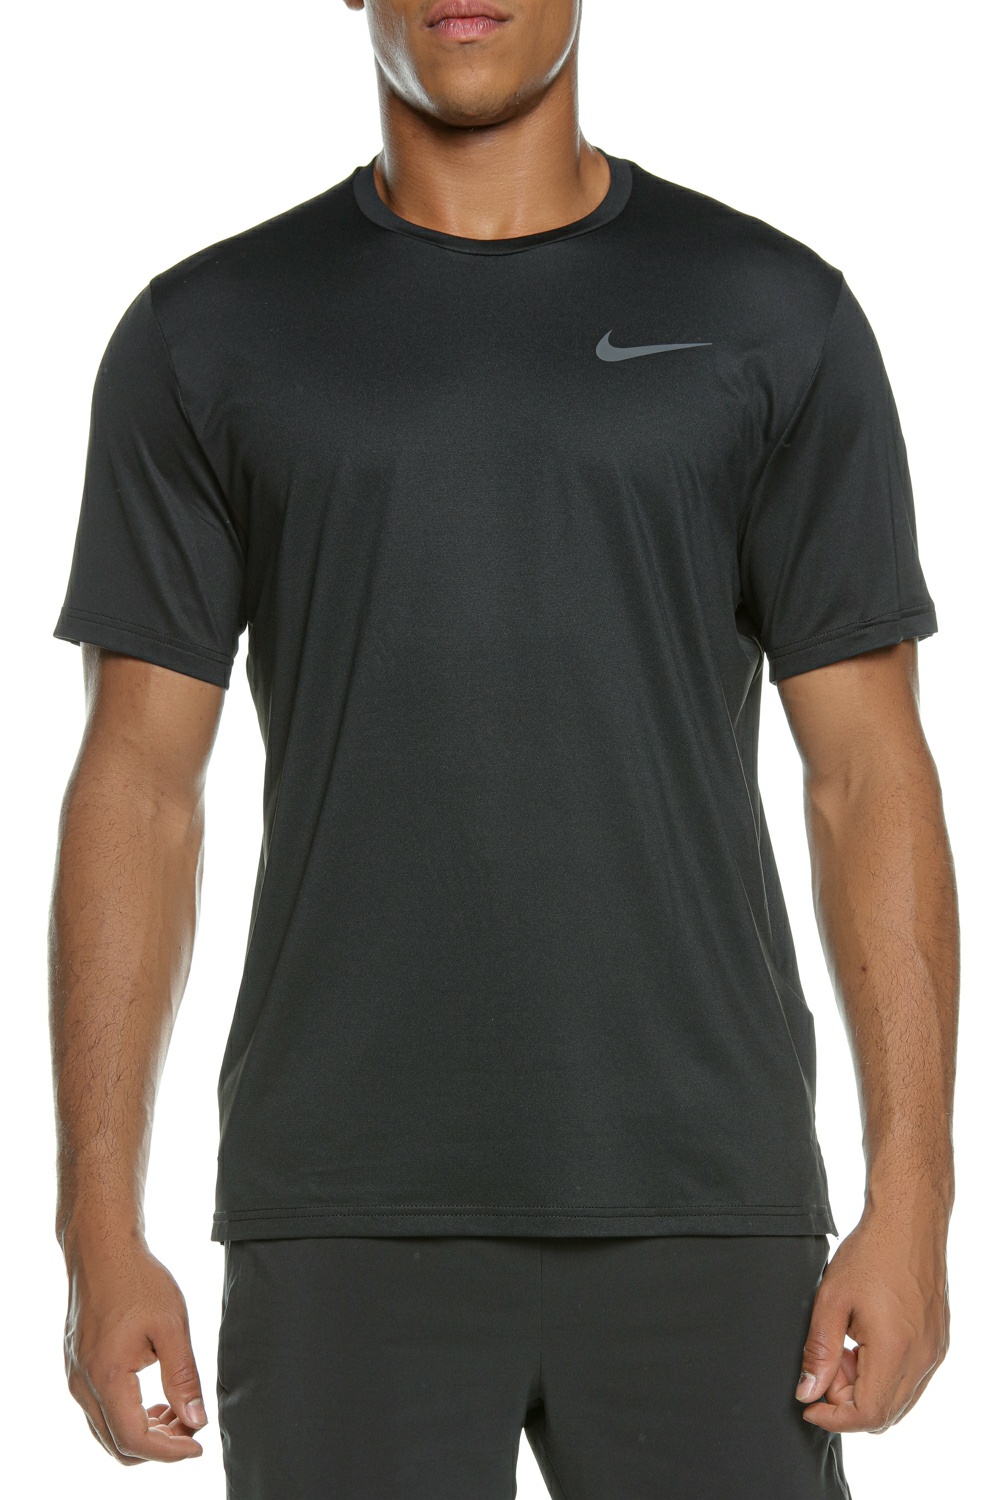 Ανδρικά/Ρούχα/Αθλητικά/T-shirt NIKE - Ανδρική μπλούζα NIKE NP DF HPR DRY TOP SS μαύρη